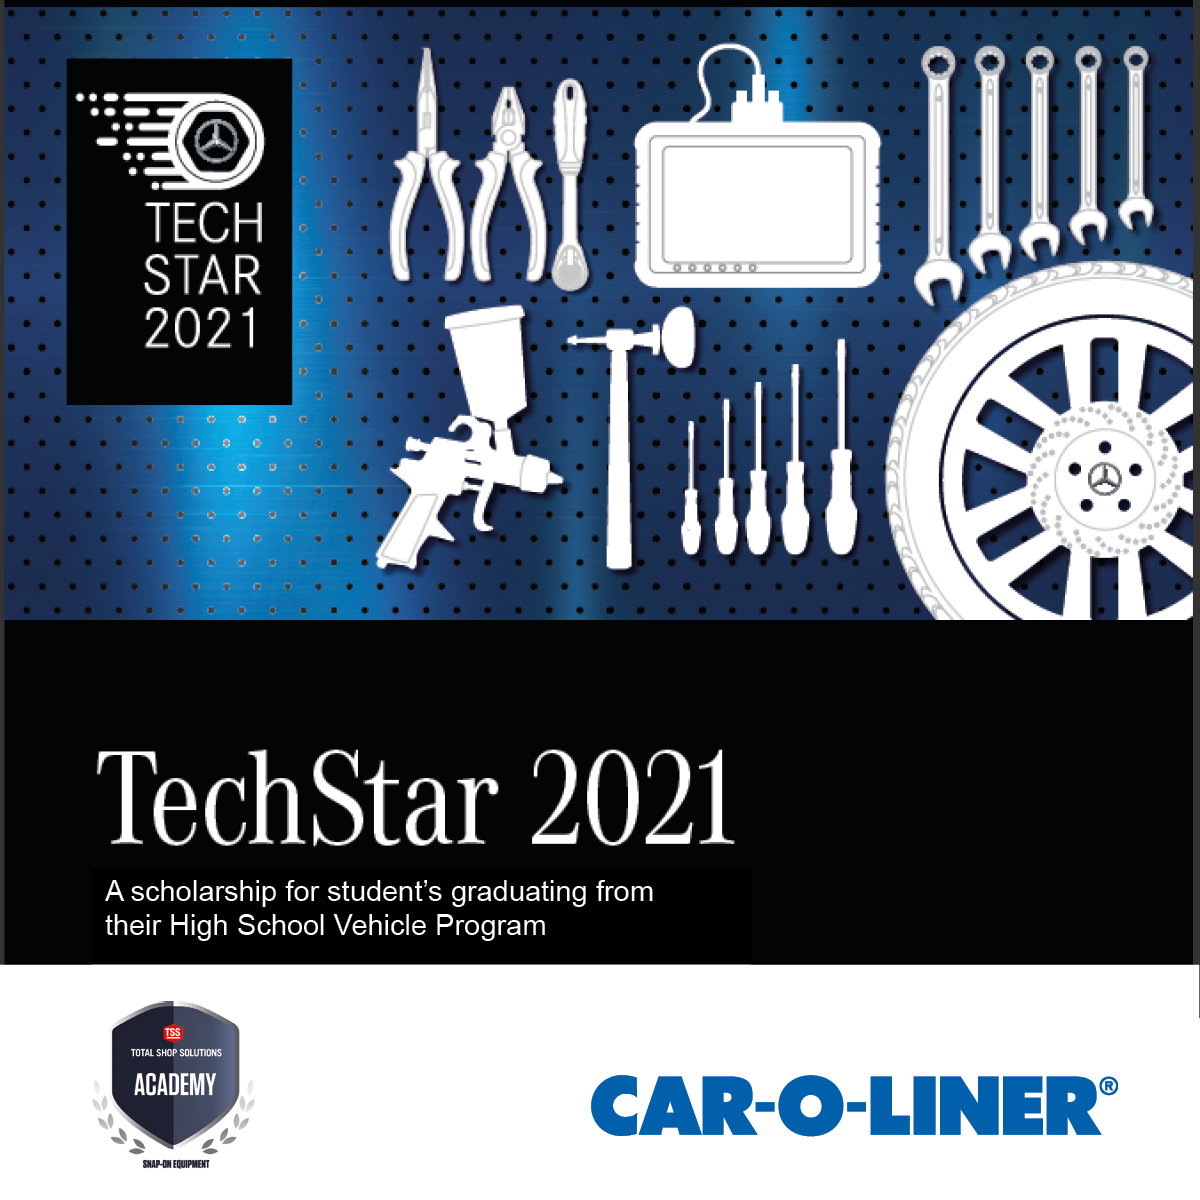 TechStar 2021 announcement banner